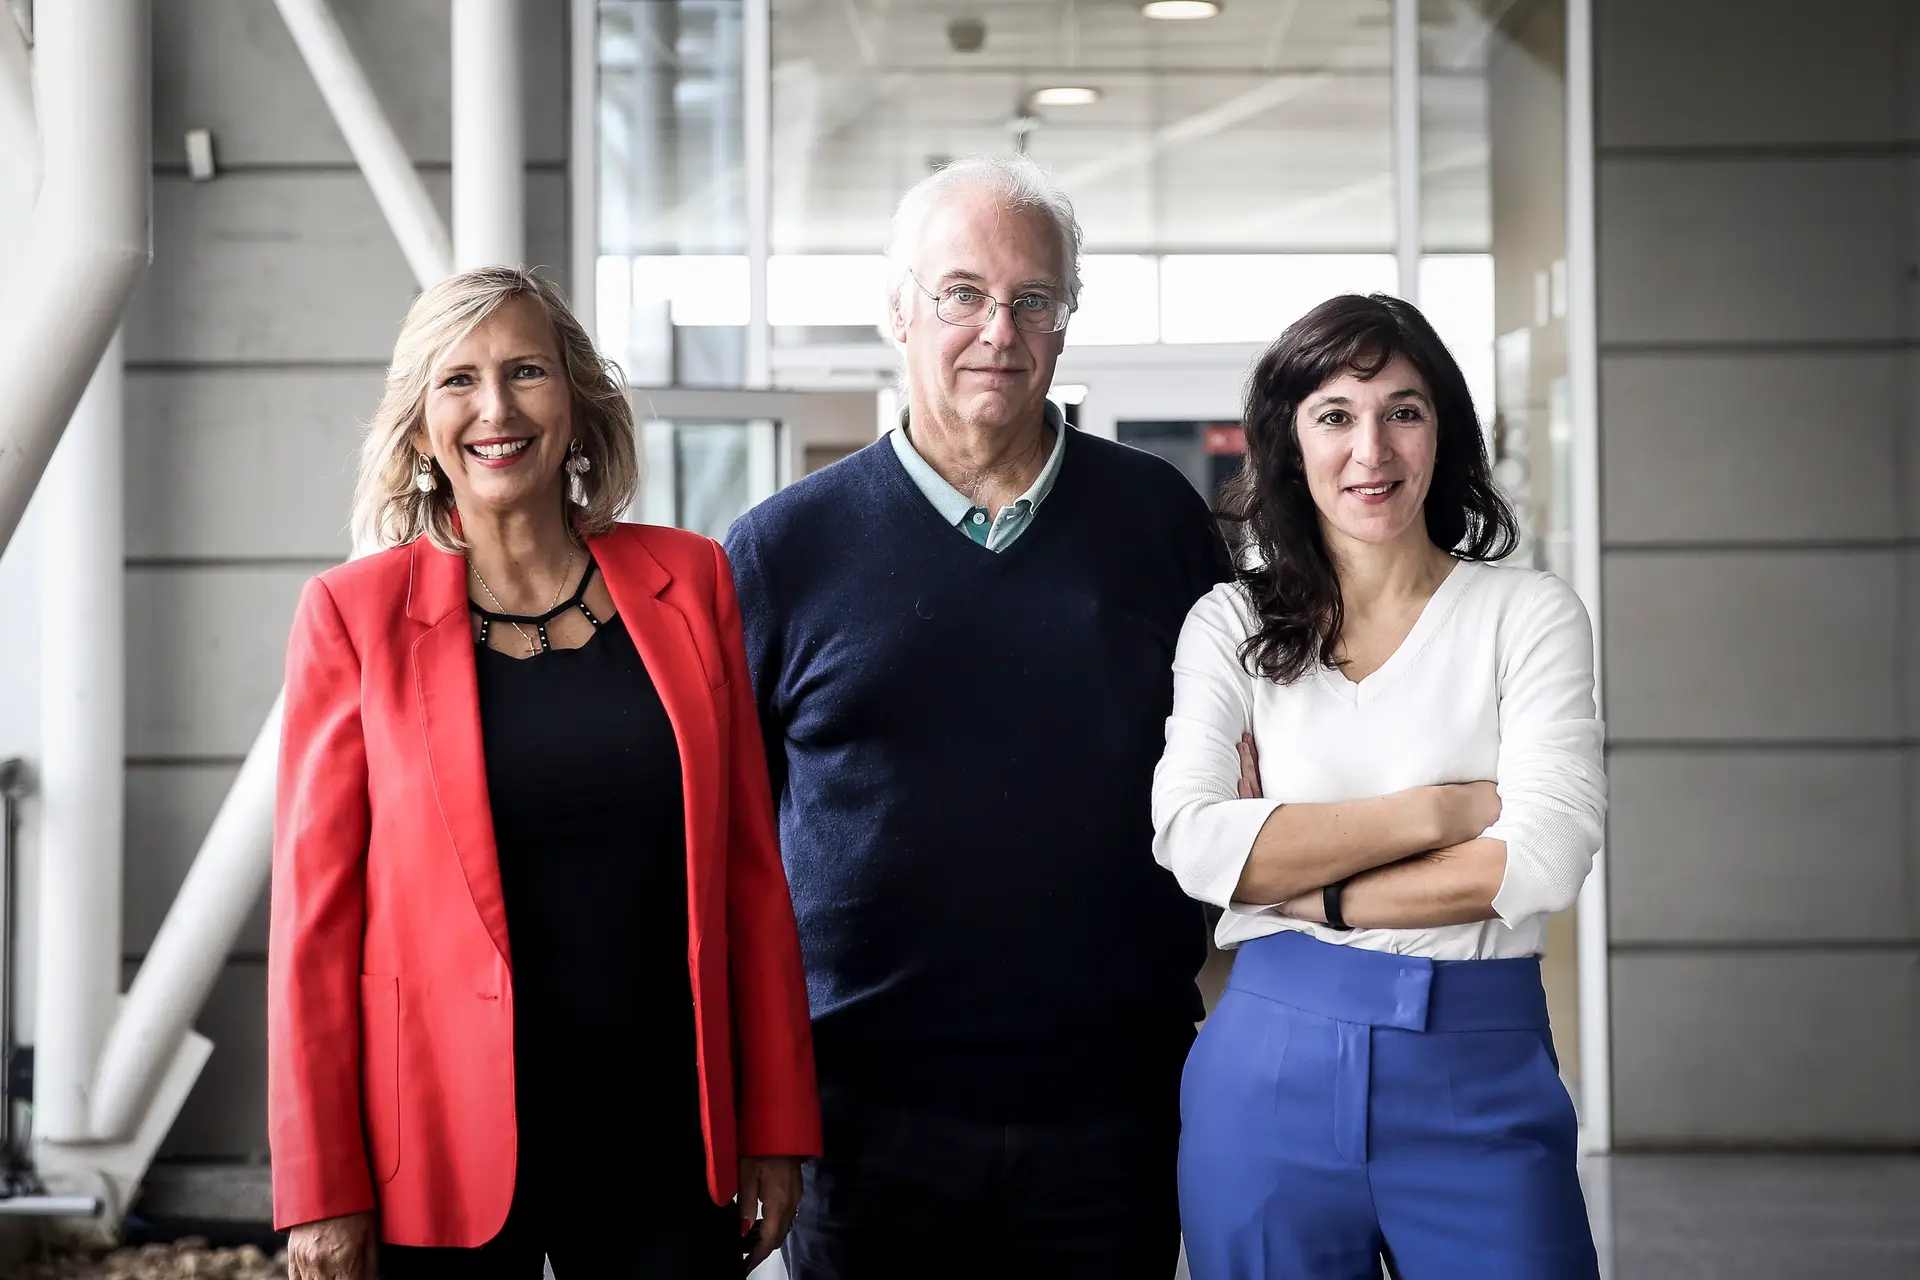 Cecília Arraino, investigadora do ITQB, José Manuel Rebordão, da FCUL, e Ermelinda Maçôas, do IST, vieram ao podcast Futuro do Futuro explicar a ciência dos prémios Nobel da Medicina, da Física e da Química